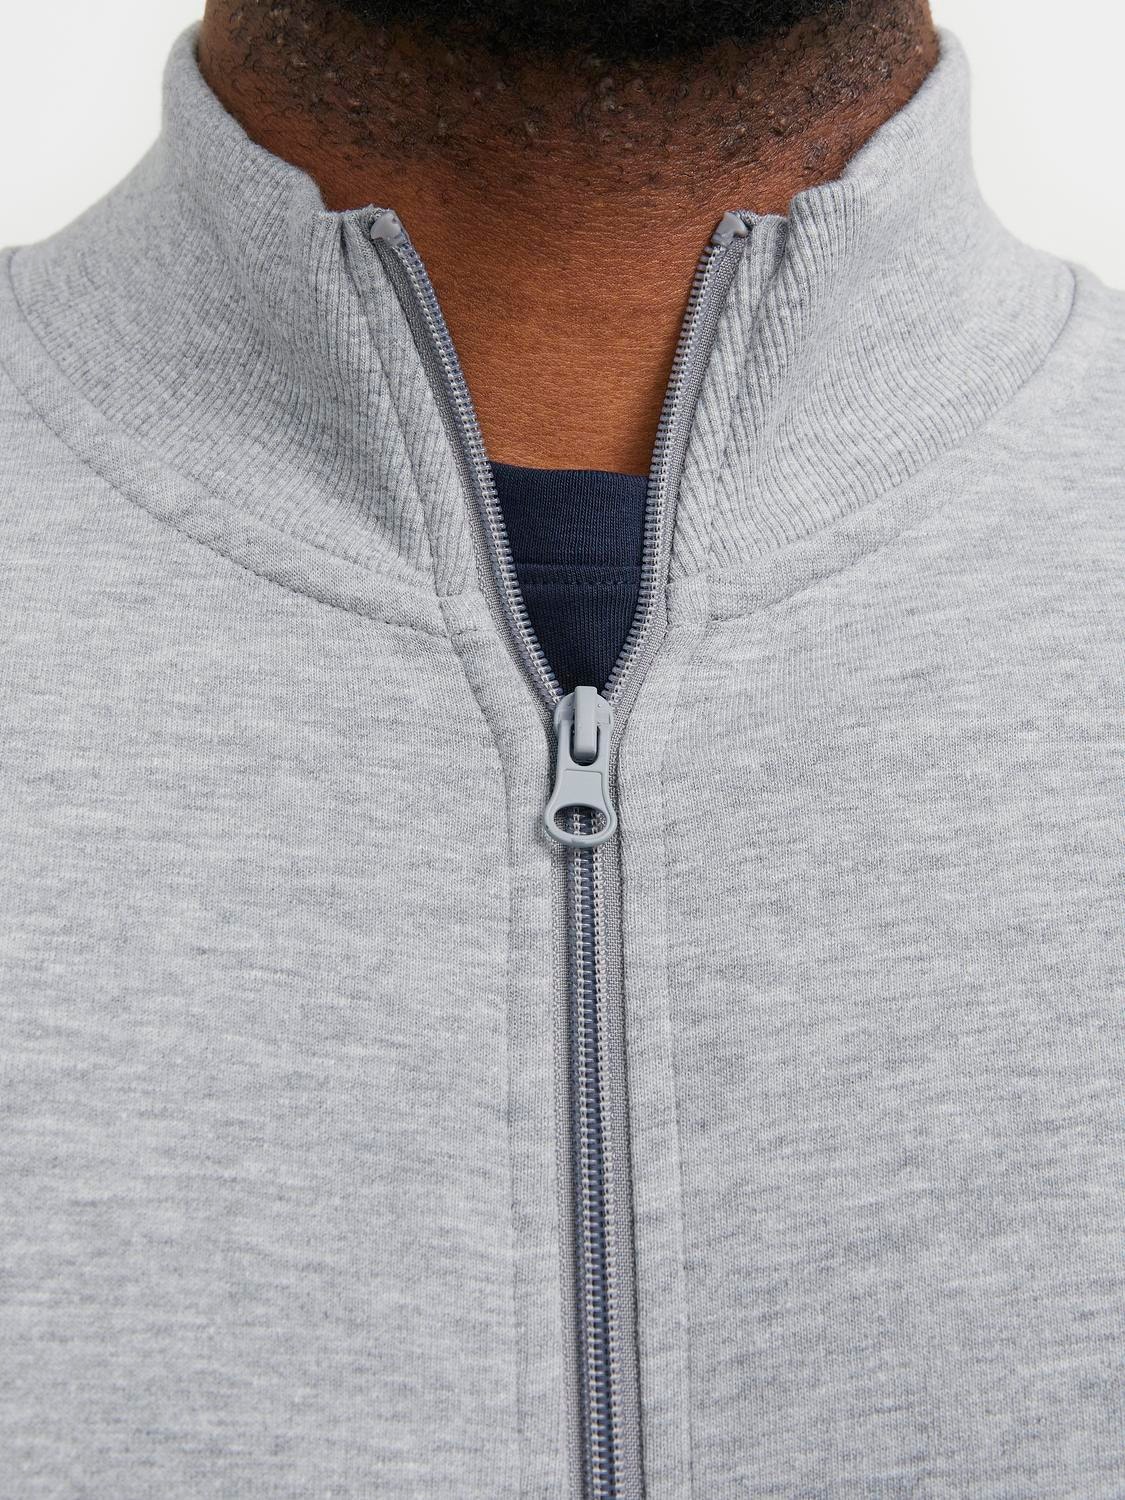 Jack & Jones Plus Size Plain Zip Sweatshirt -Light Grey Melange - 12253745